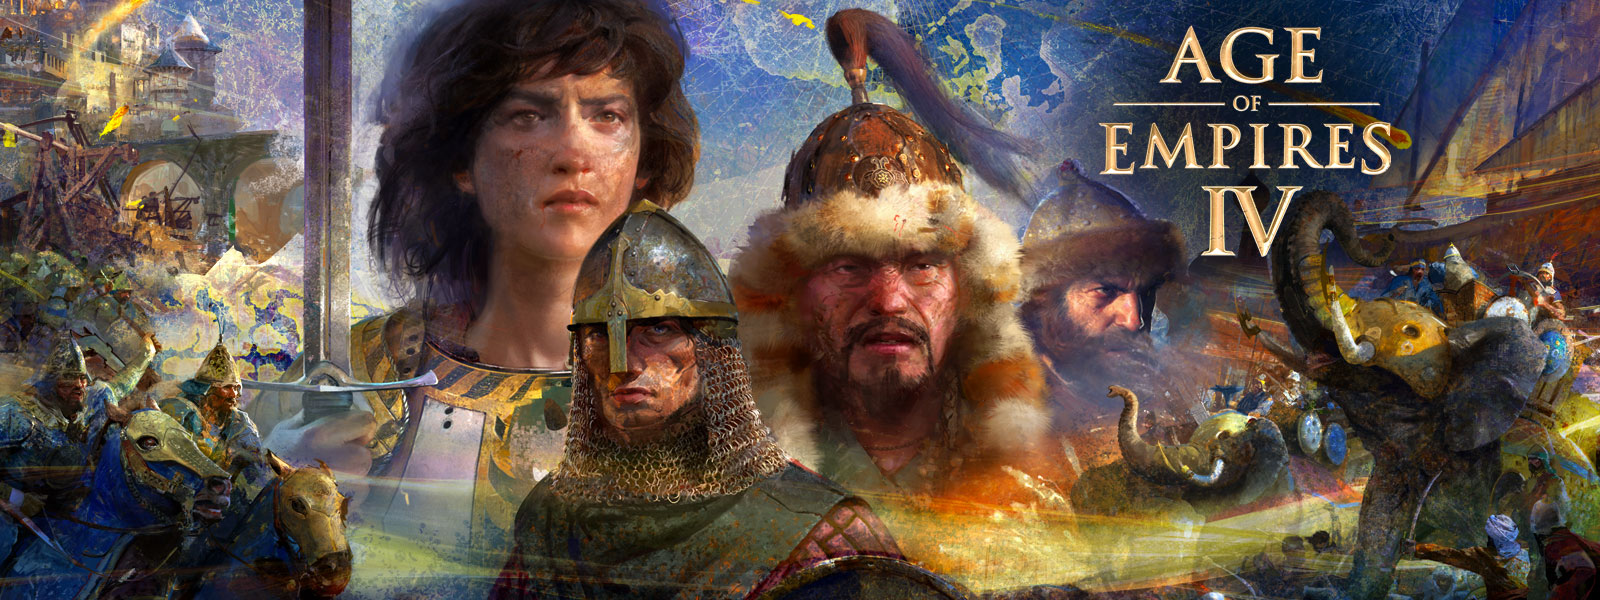 Age of Empires IV. 전쟁 장면, 코끼리, 말에 탄 사람들이 지도 배경에서 네 명의 캐릭터를 둘러싸고 있는 모습